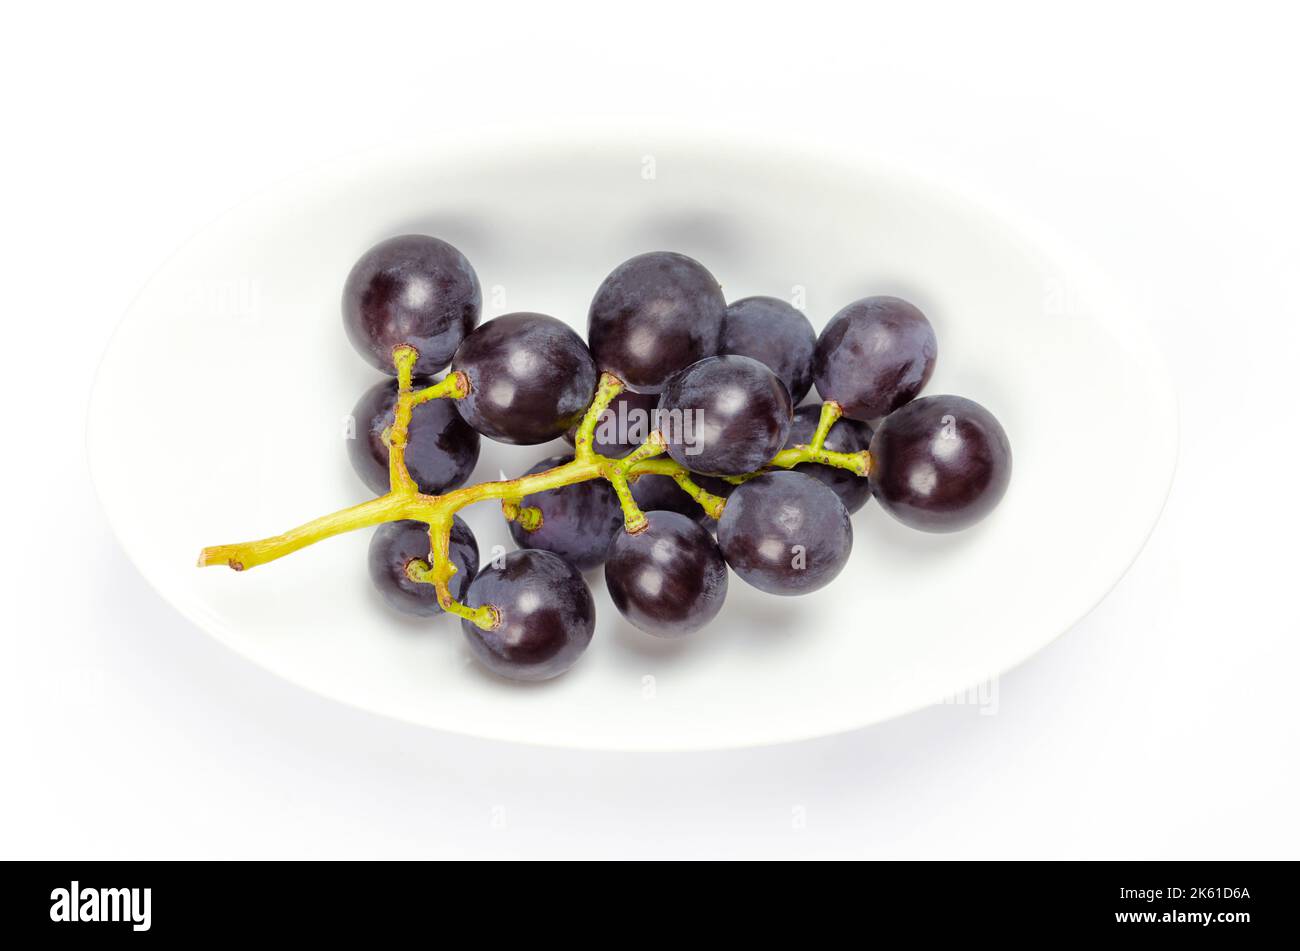 Gewöhnliche Weinreben, in einer weißen Schale. Frisch gepflückte Reben aus reifen Wildtrauben, Vitis vinifera, mit kleinen dunkelvioletten Trauben. Stockfoto